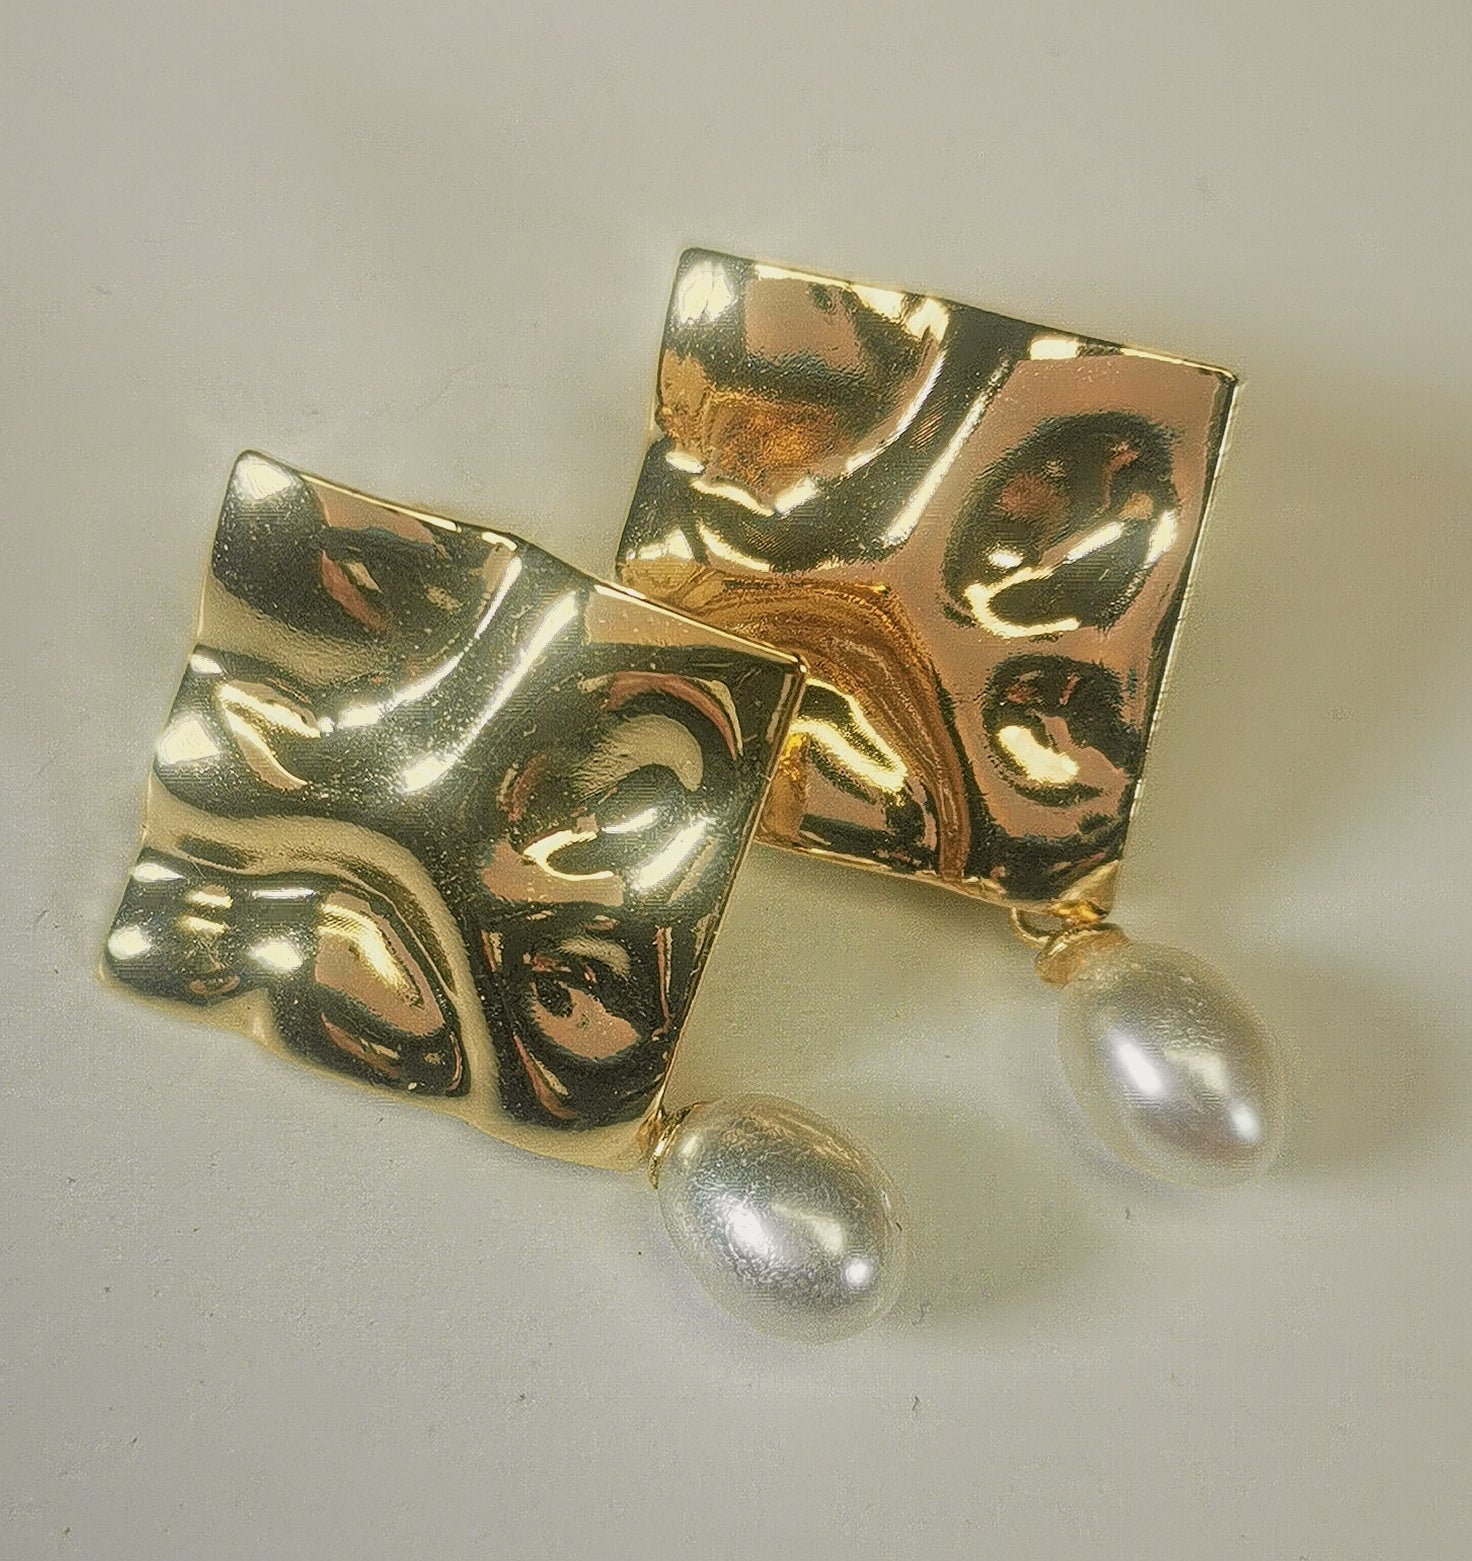 Boucles d'oreilles composées d'un carré martelé de 18mm, plaqué or, sur clou, sous lequel est suspendue une perle blanche , ovale 7-9mm. Présentées posées sur un fond blanc, cote à cote, inclinées sur la droite, la boucle de gauche chevauchant celle de droite. Vue en gros plan,de dessus